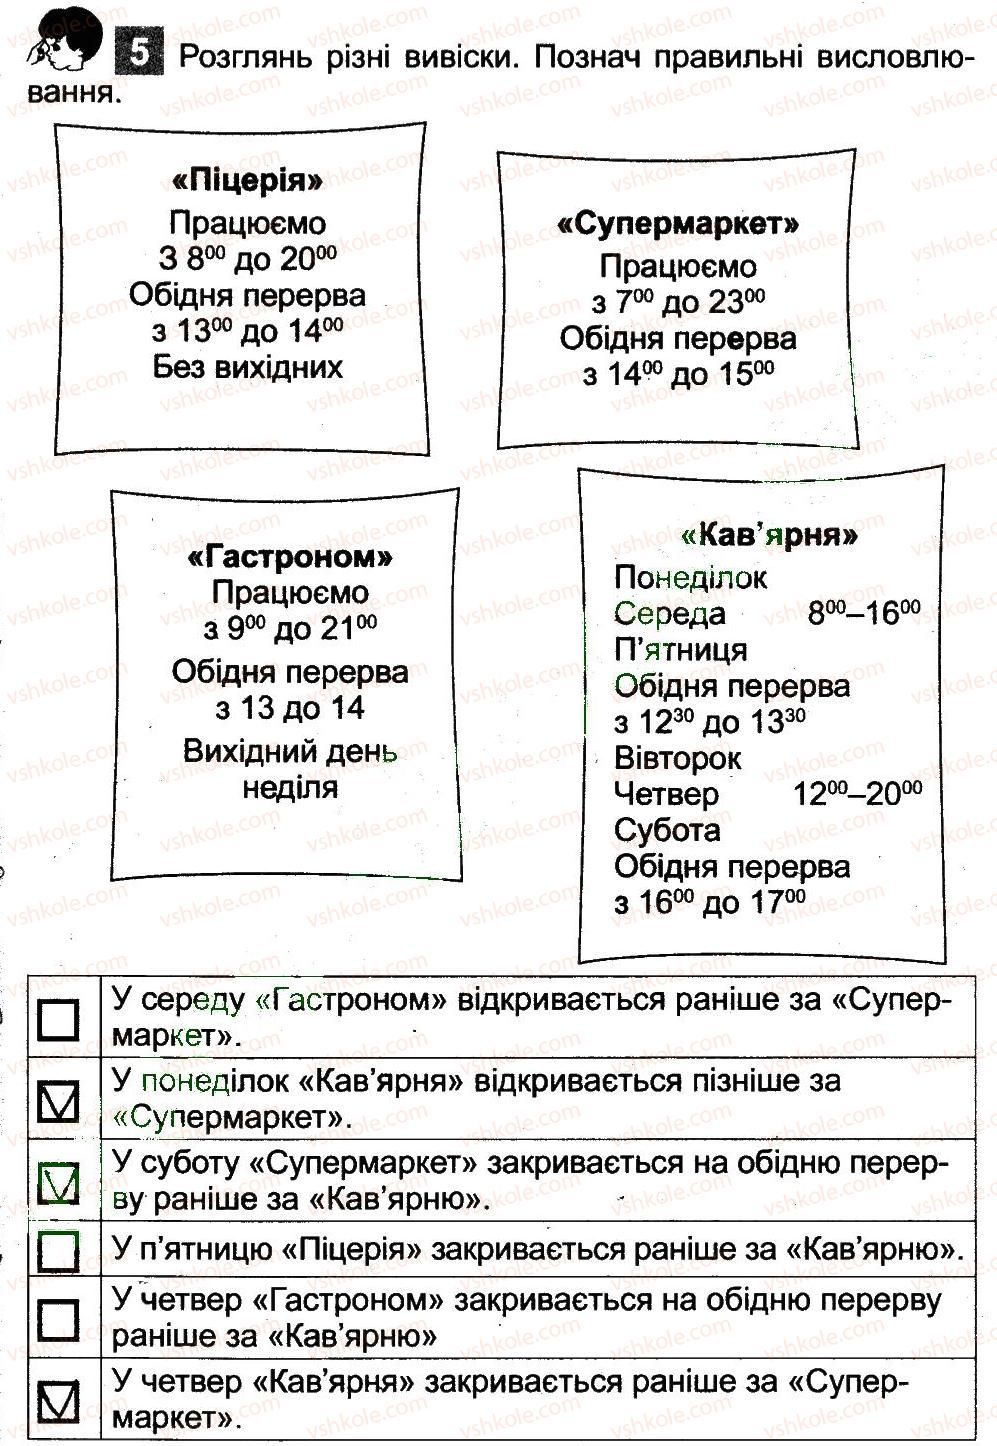 3-informatika-ov-korshunova-2014-robochij-zoshit--fajli-ta-papki-vikna-ta-operatsiyi-nad-viknami-vikna-5.jpg